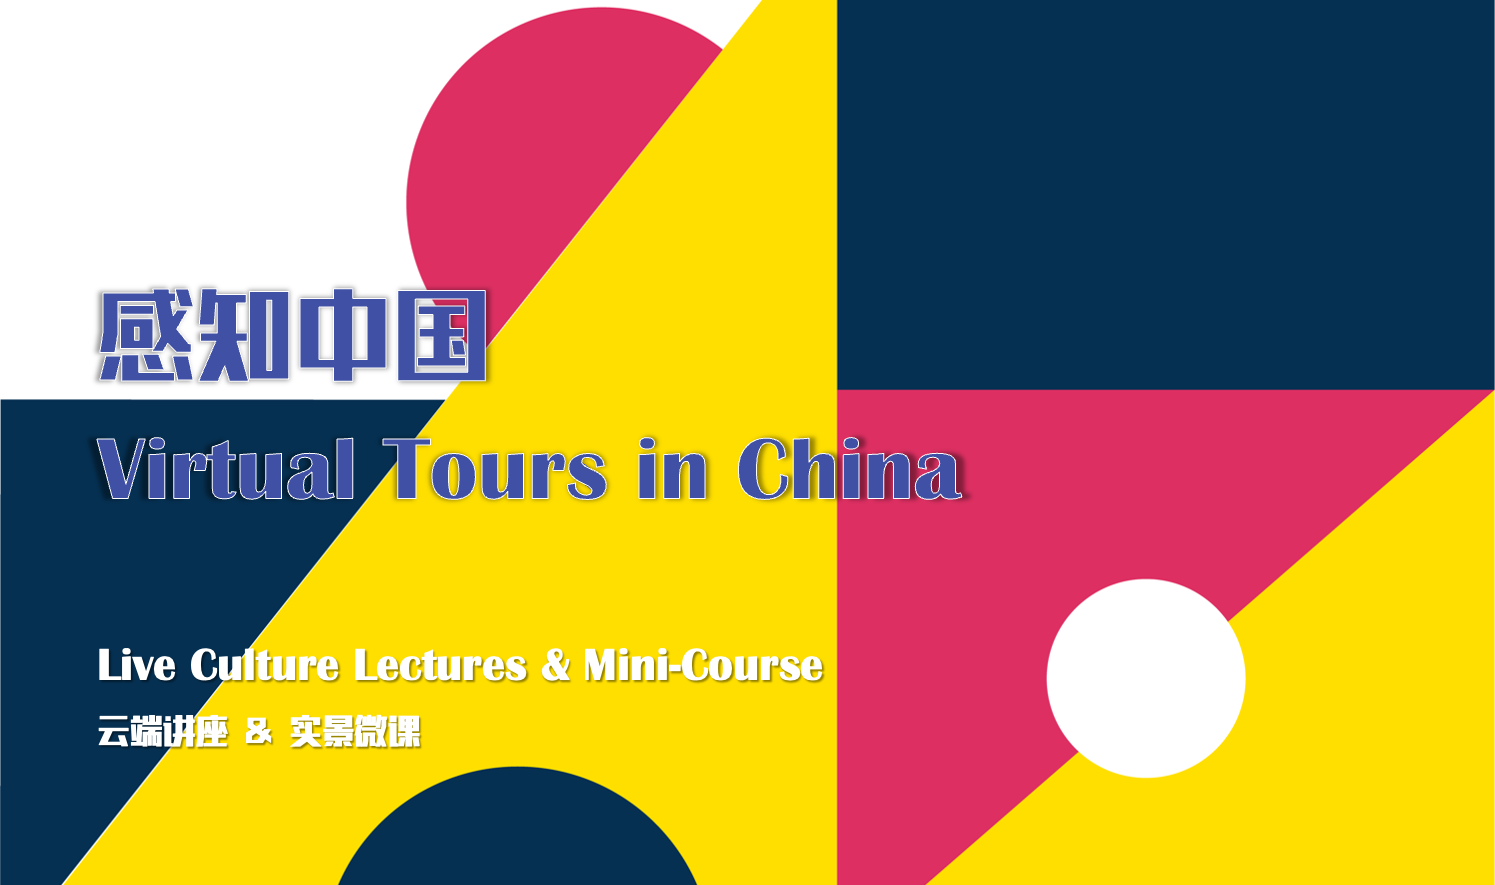 Live Culture Lectures & Mini-Course